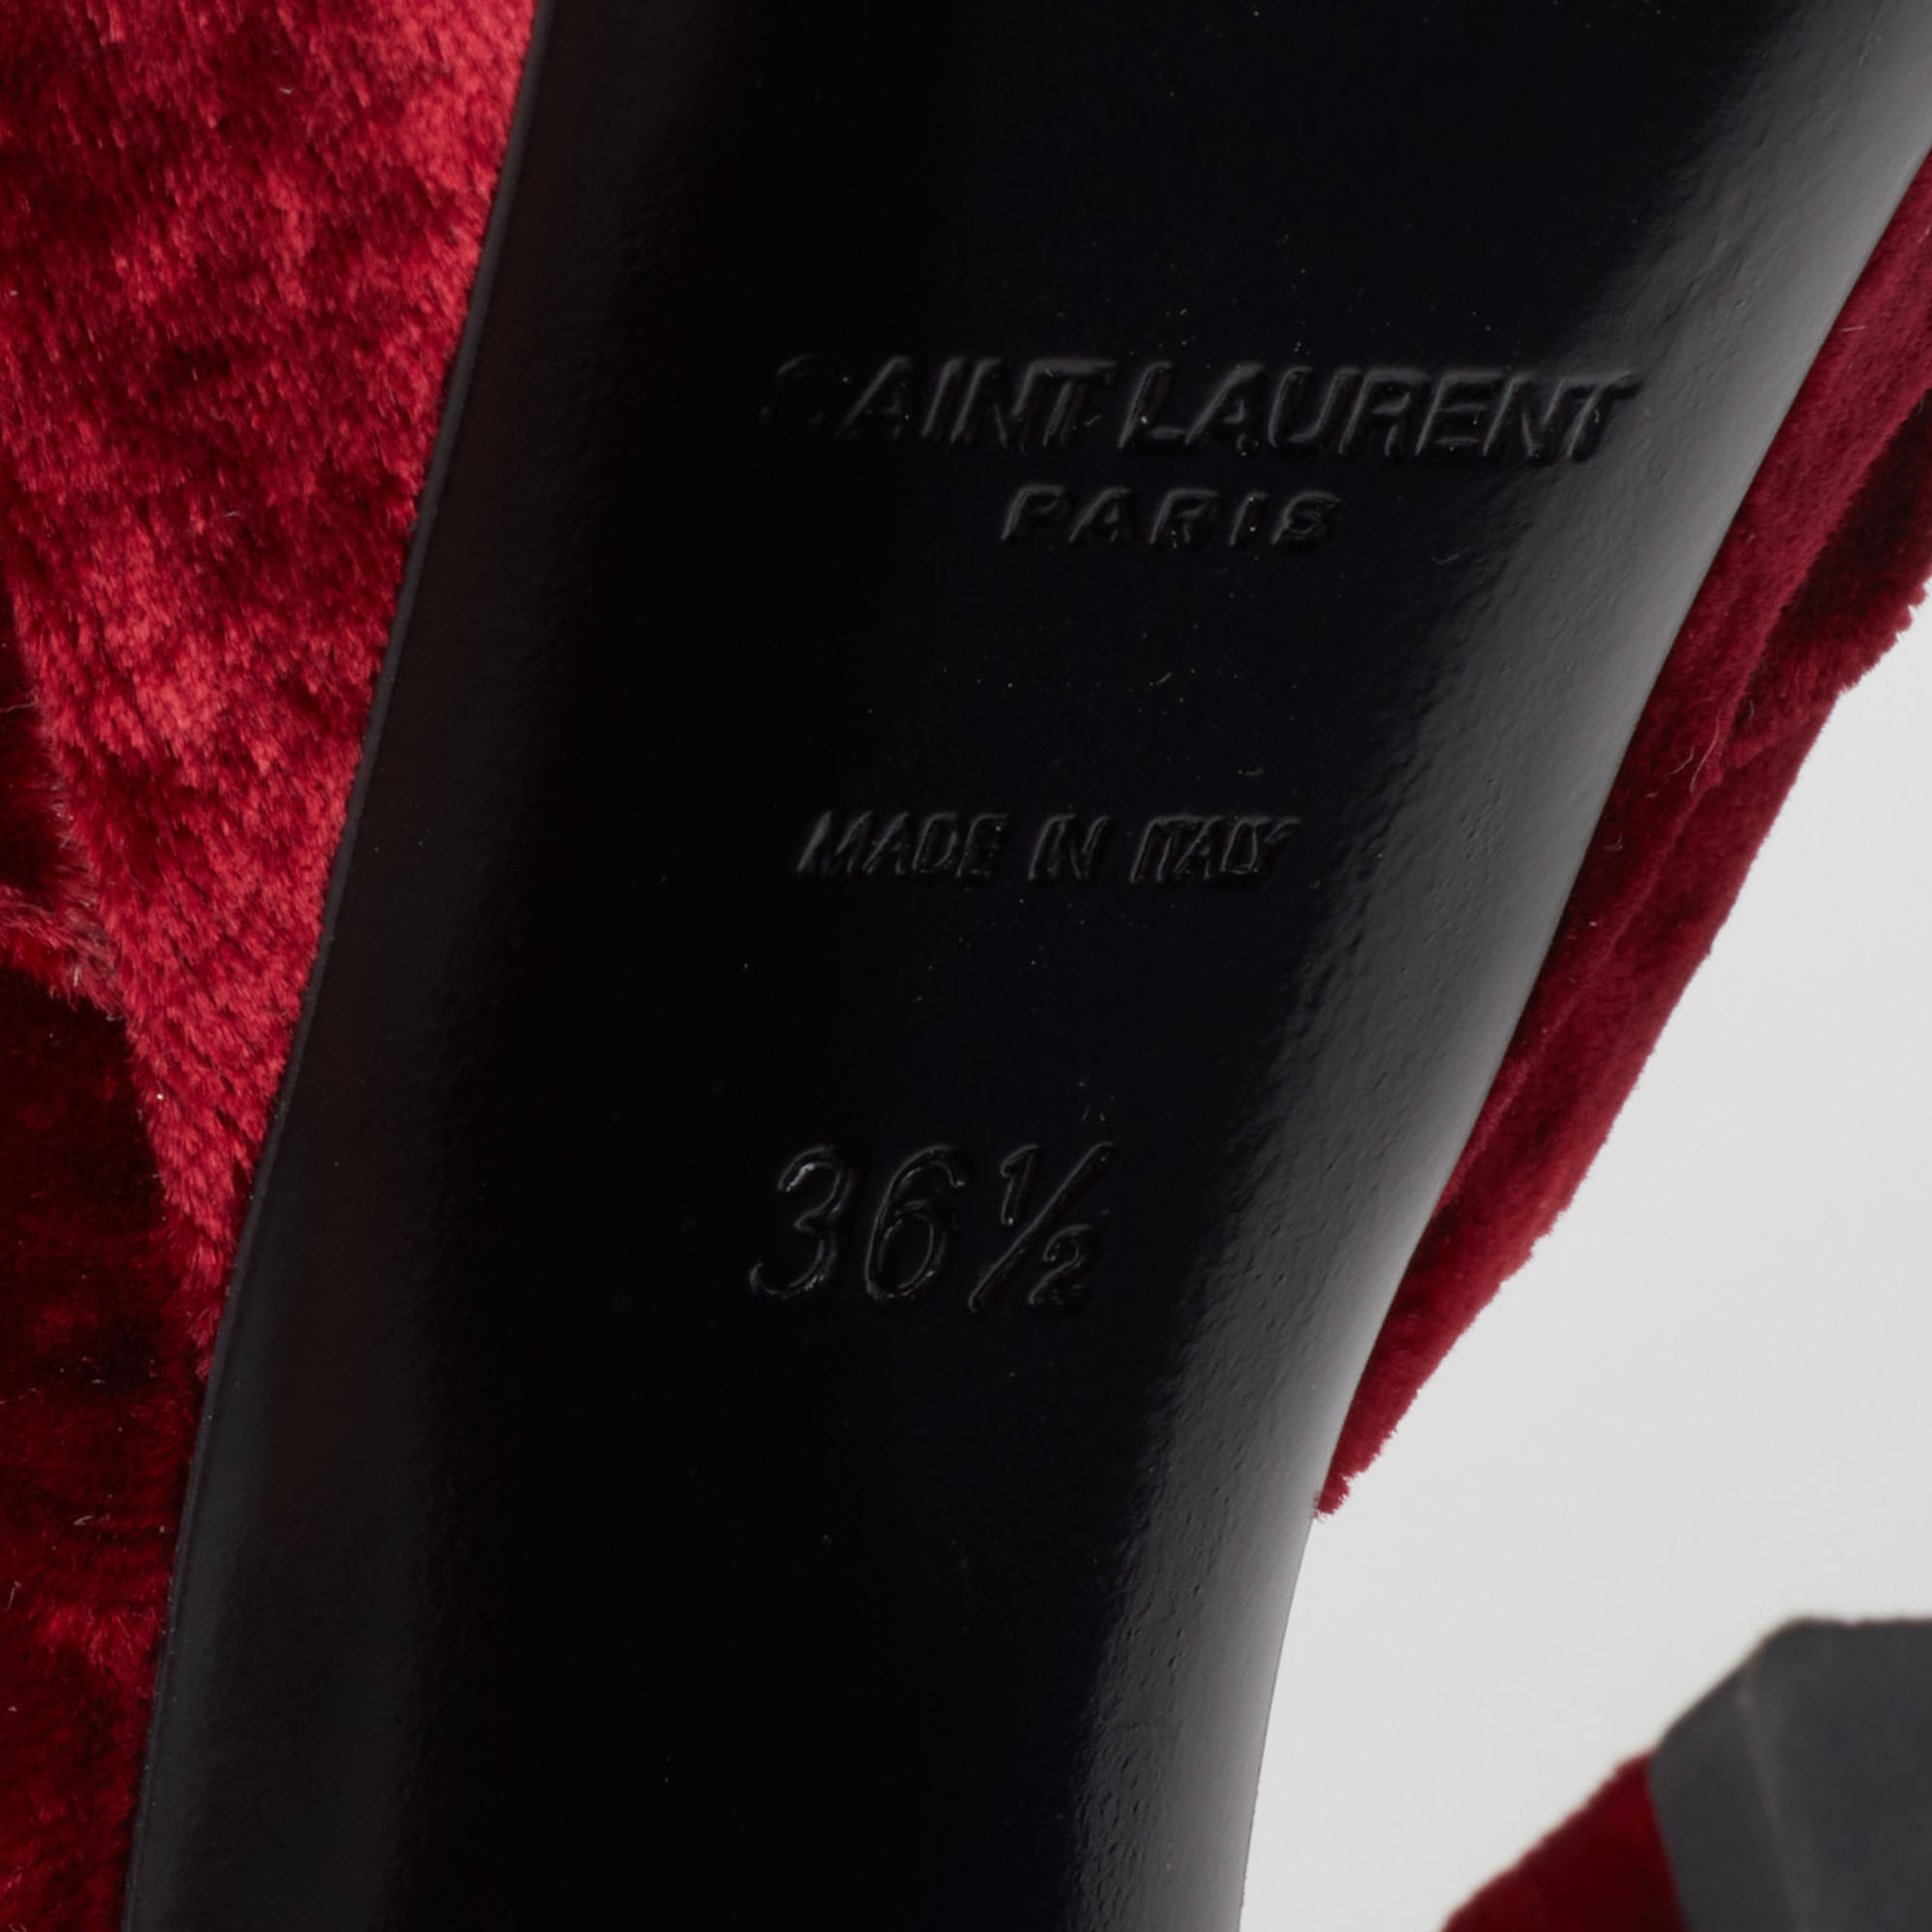 Saint Laurent Red Velvet Candy Bow Sandals Size 36.5